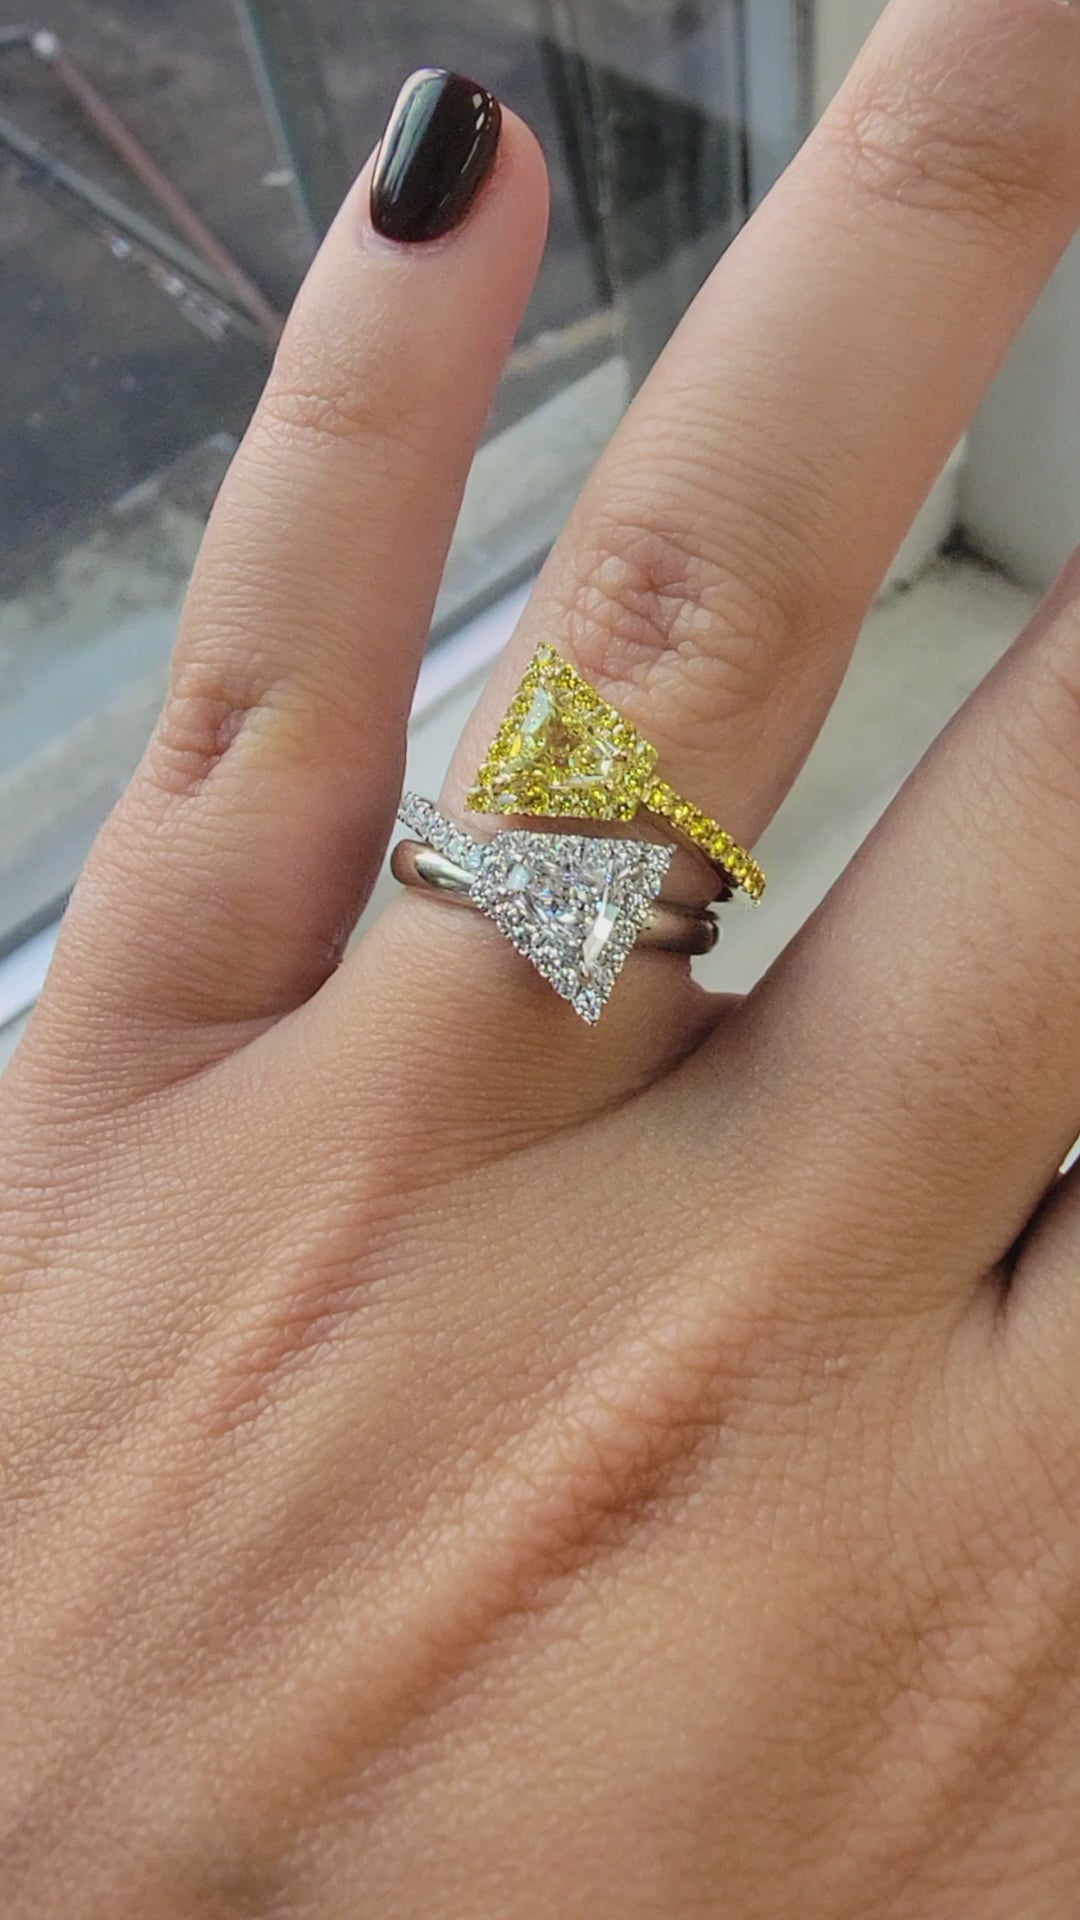 Toi et Moi Shield Yellow & White Diamond Ring